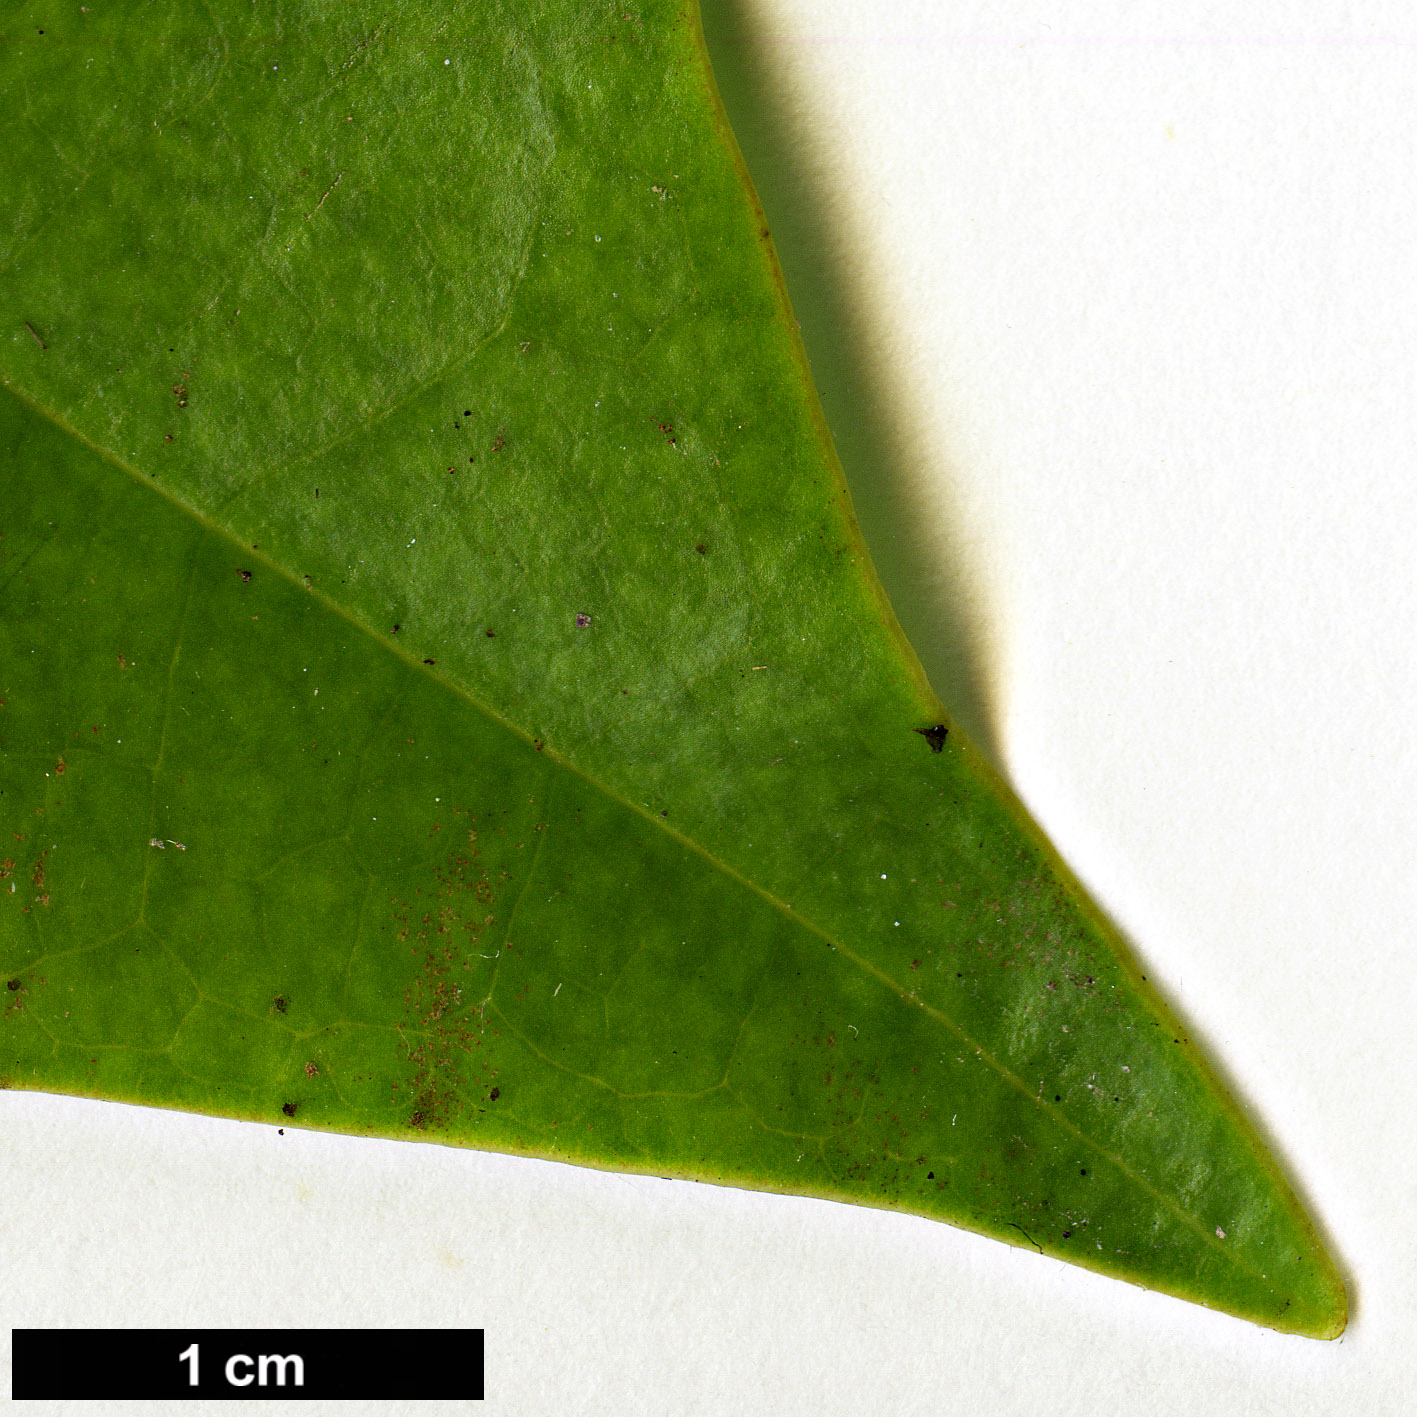 High resolution image: Family: Magnoliaceae - Genus: Magnolia - Taxon: grandis